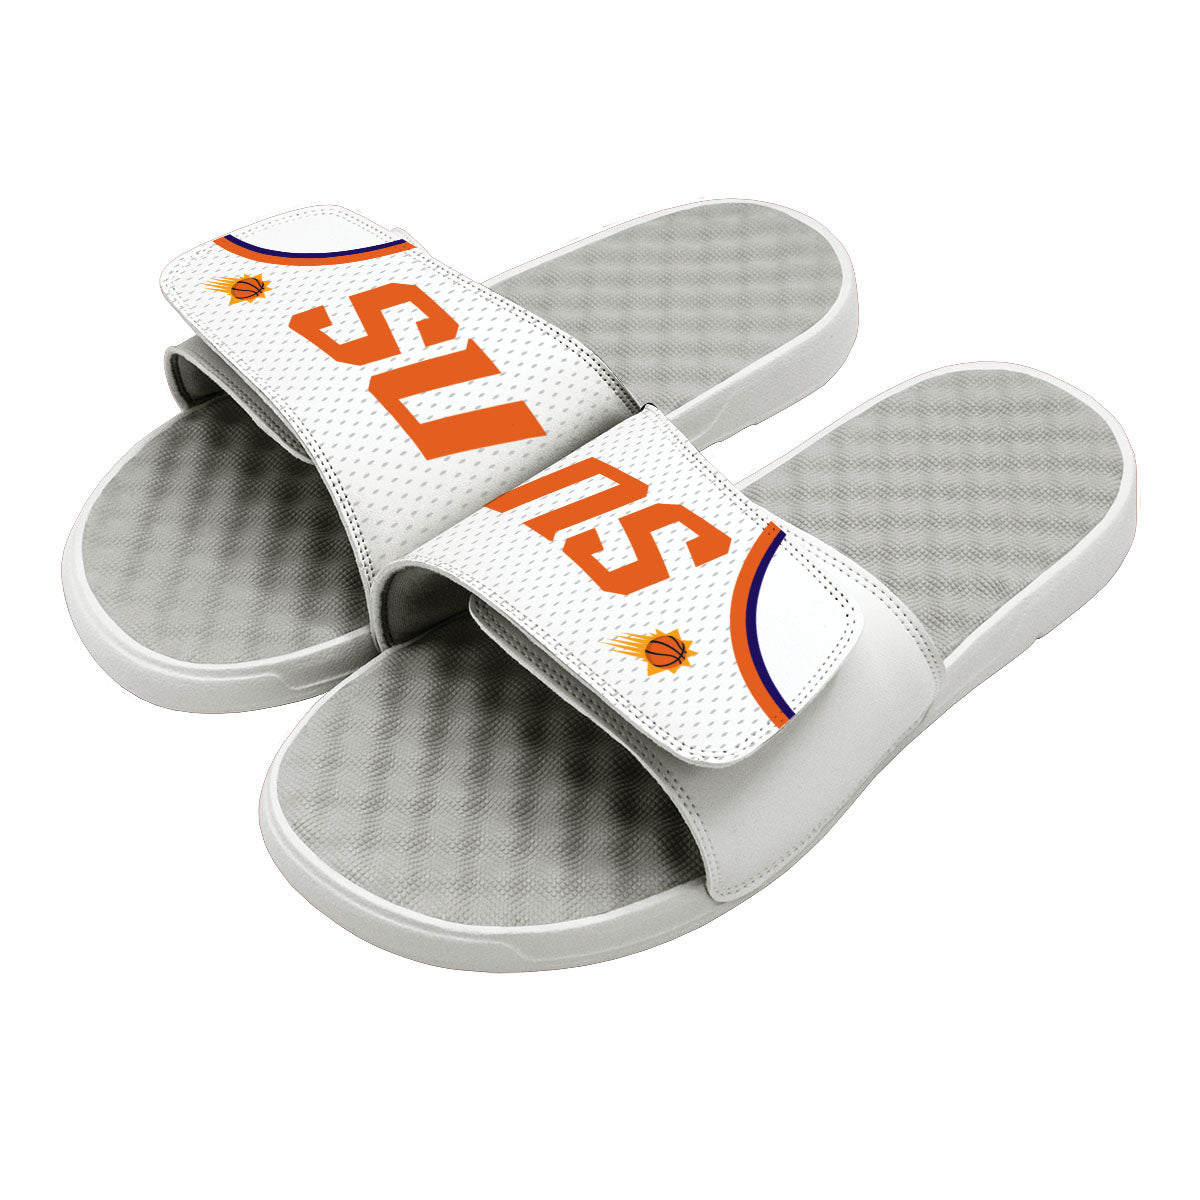 Phoenix Suns NBA Custom Slide Sandals - ISlide